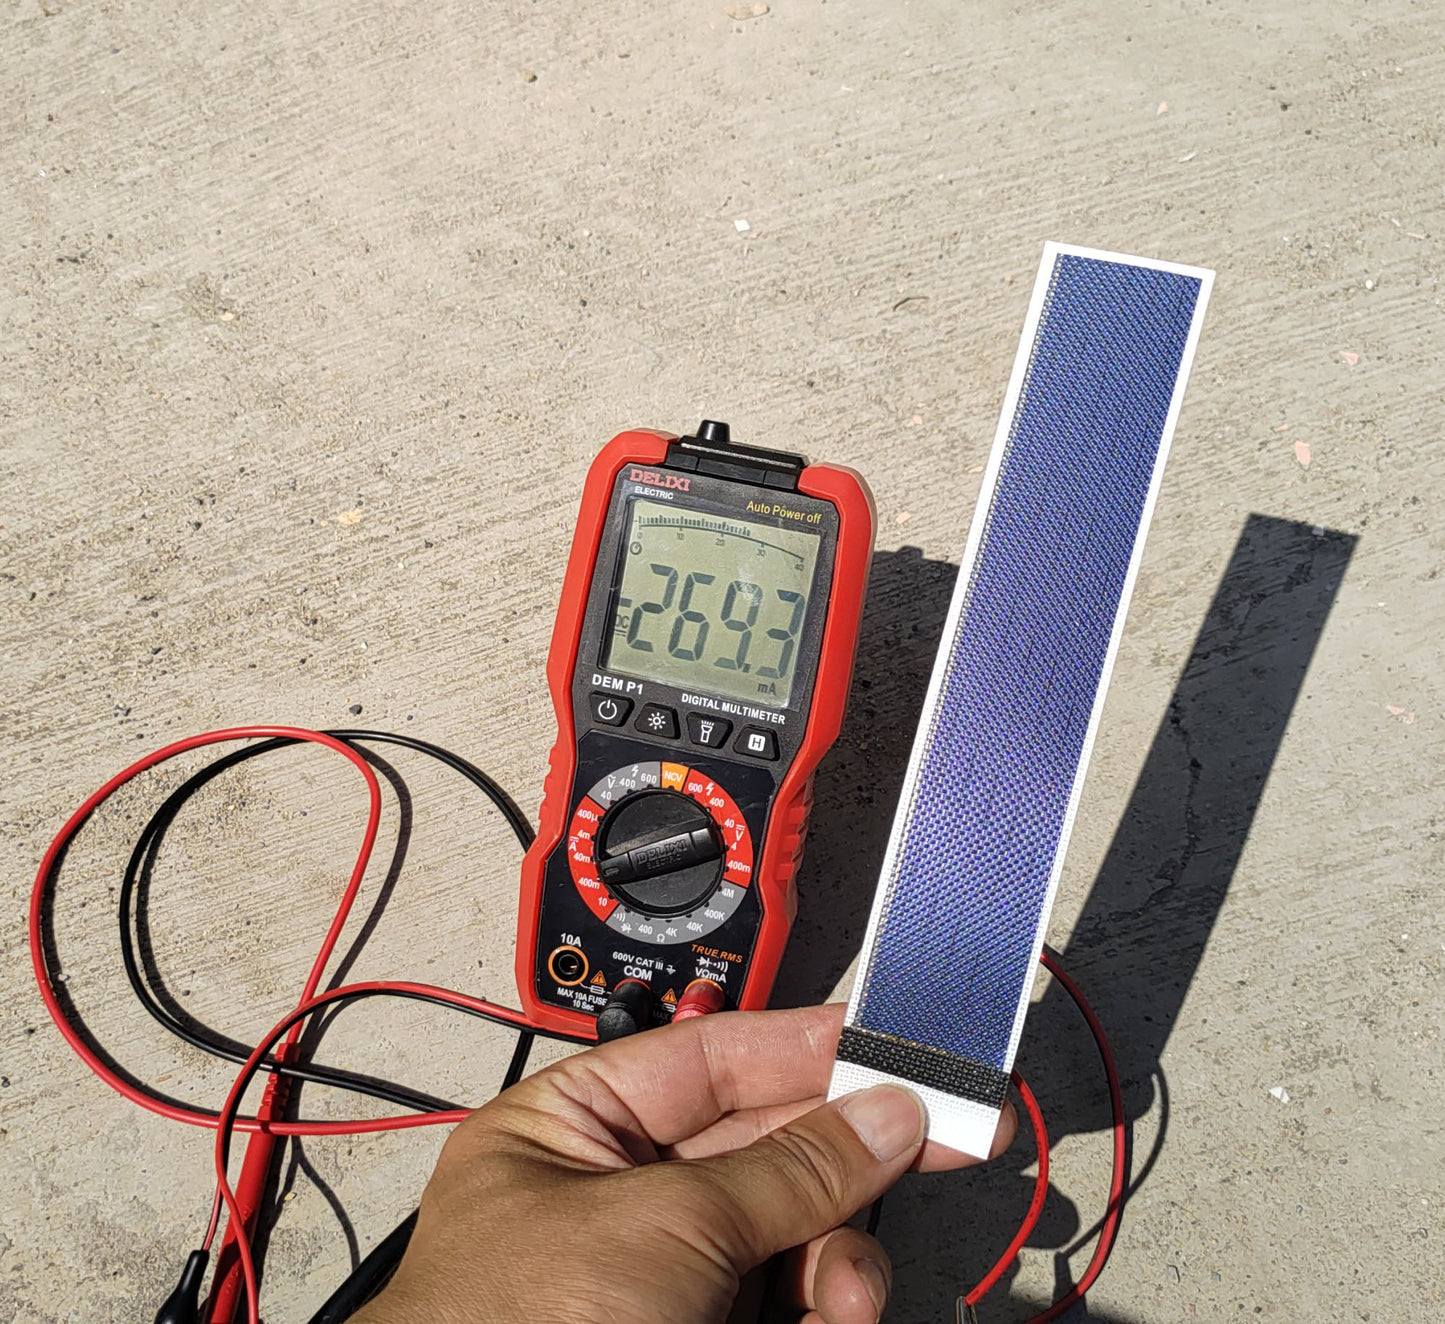 Painel solar de filme fino para baixa potência IoT Electronics Carregador de bateria Célula solar flexível Faça você mesmo Mini Projetos científicos de energia solar